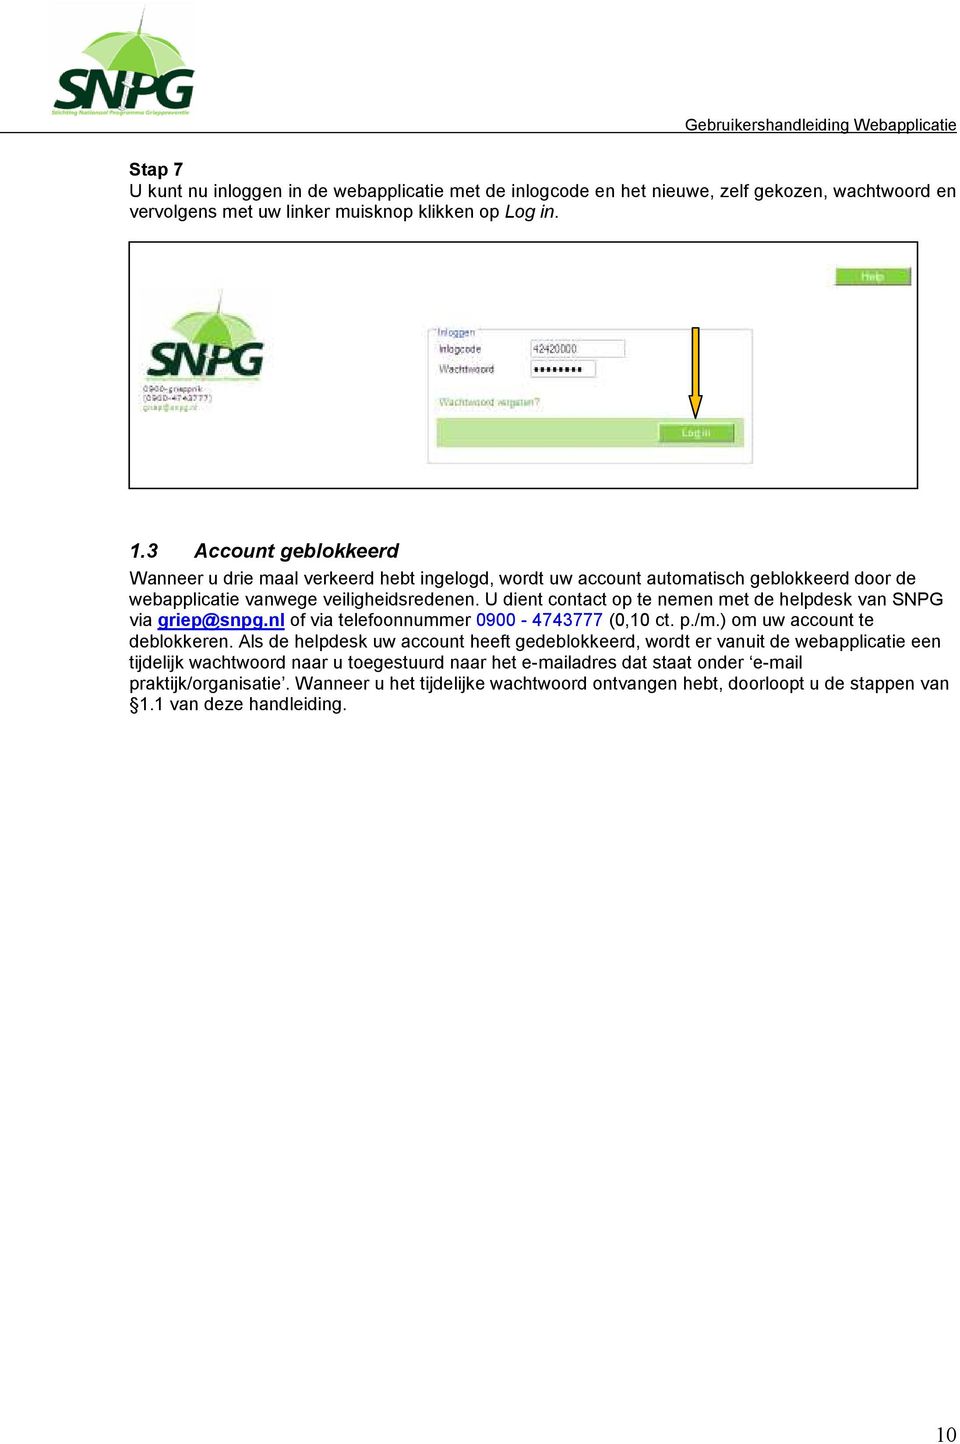 U dient contact op te nemen met de helpdesk van SNPG via griep@snpg.nl of via telefoonnummer 0900-4743777 (0,10 ct. p./m.) om uw account te deblokkeren.